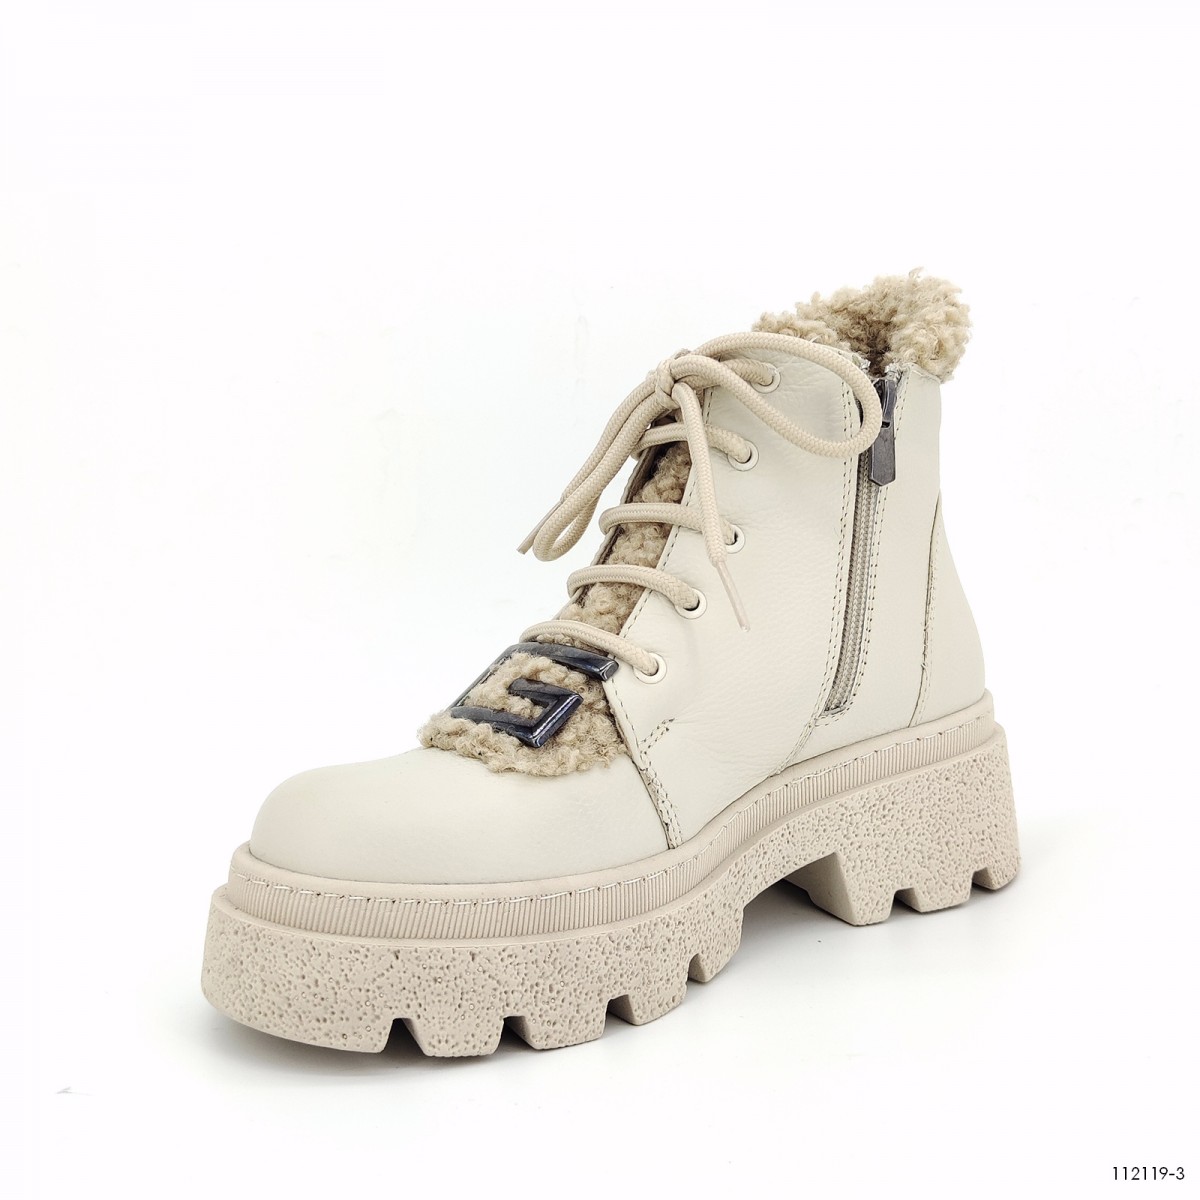 112 119, ботинки Casoreti женские зимние, бежевый